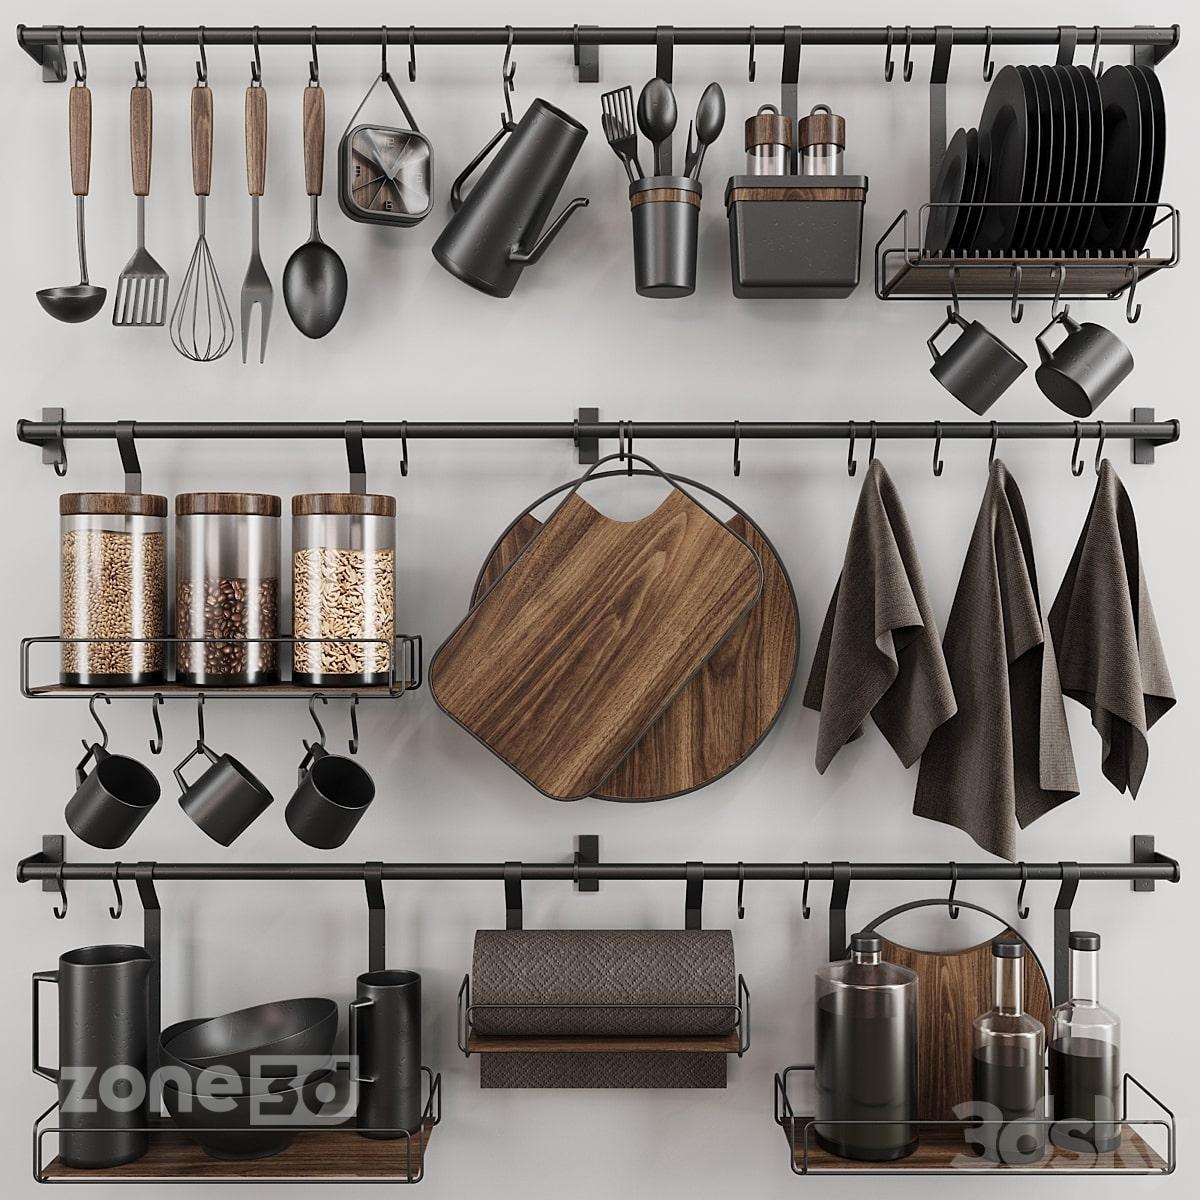 آبجکت ست لوازم و ظروف فلزی و چوبی مدرن آشپزخانه به همراه ریل